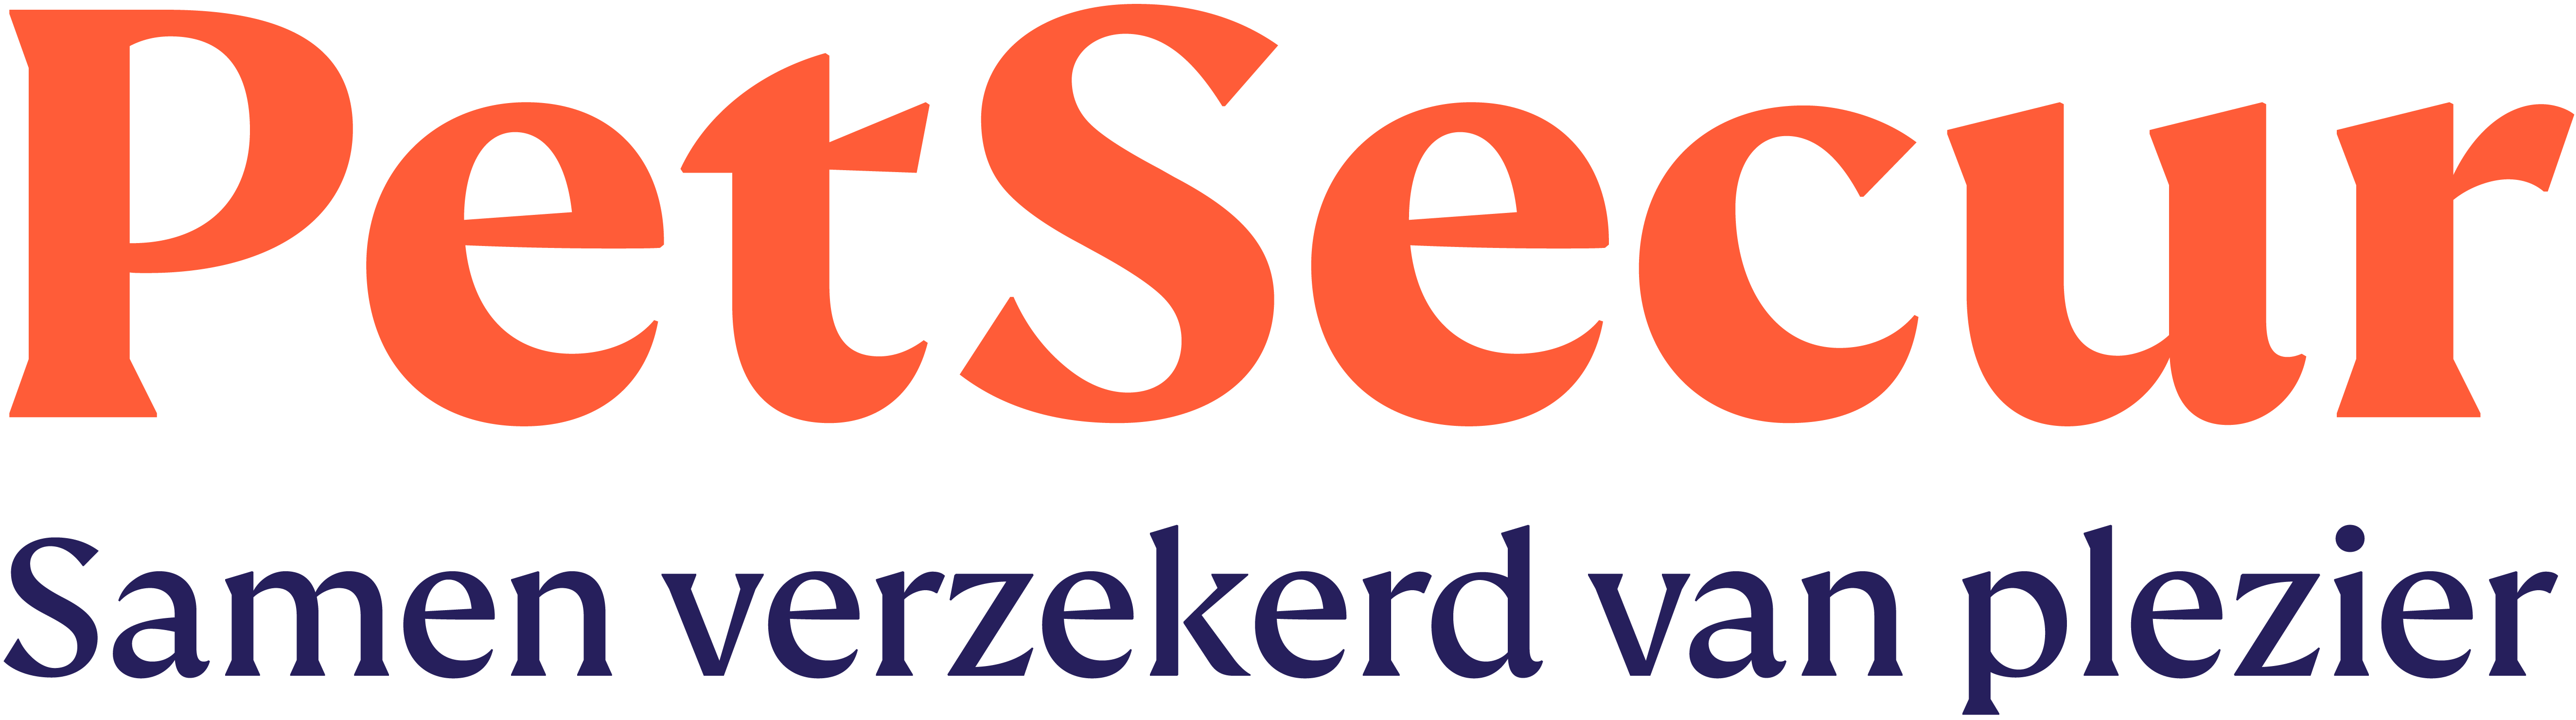 Petsecur logo